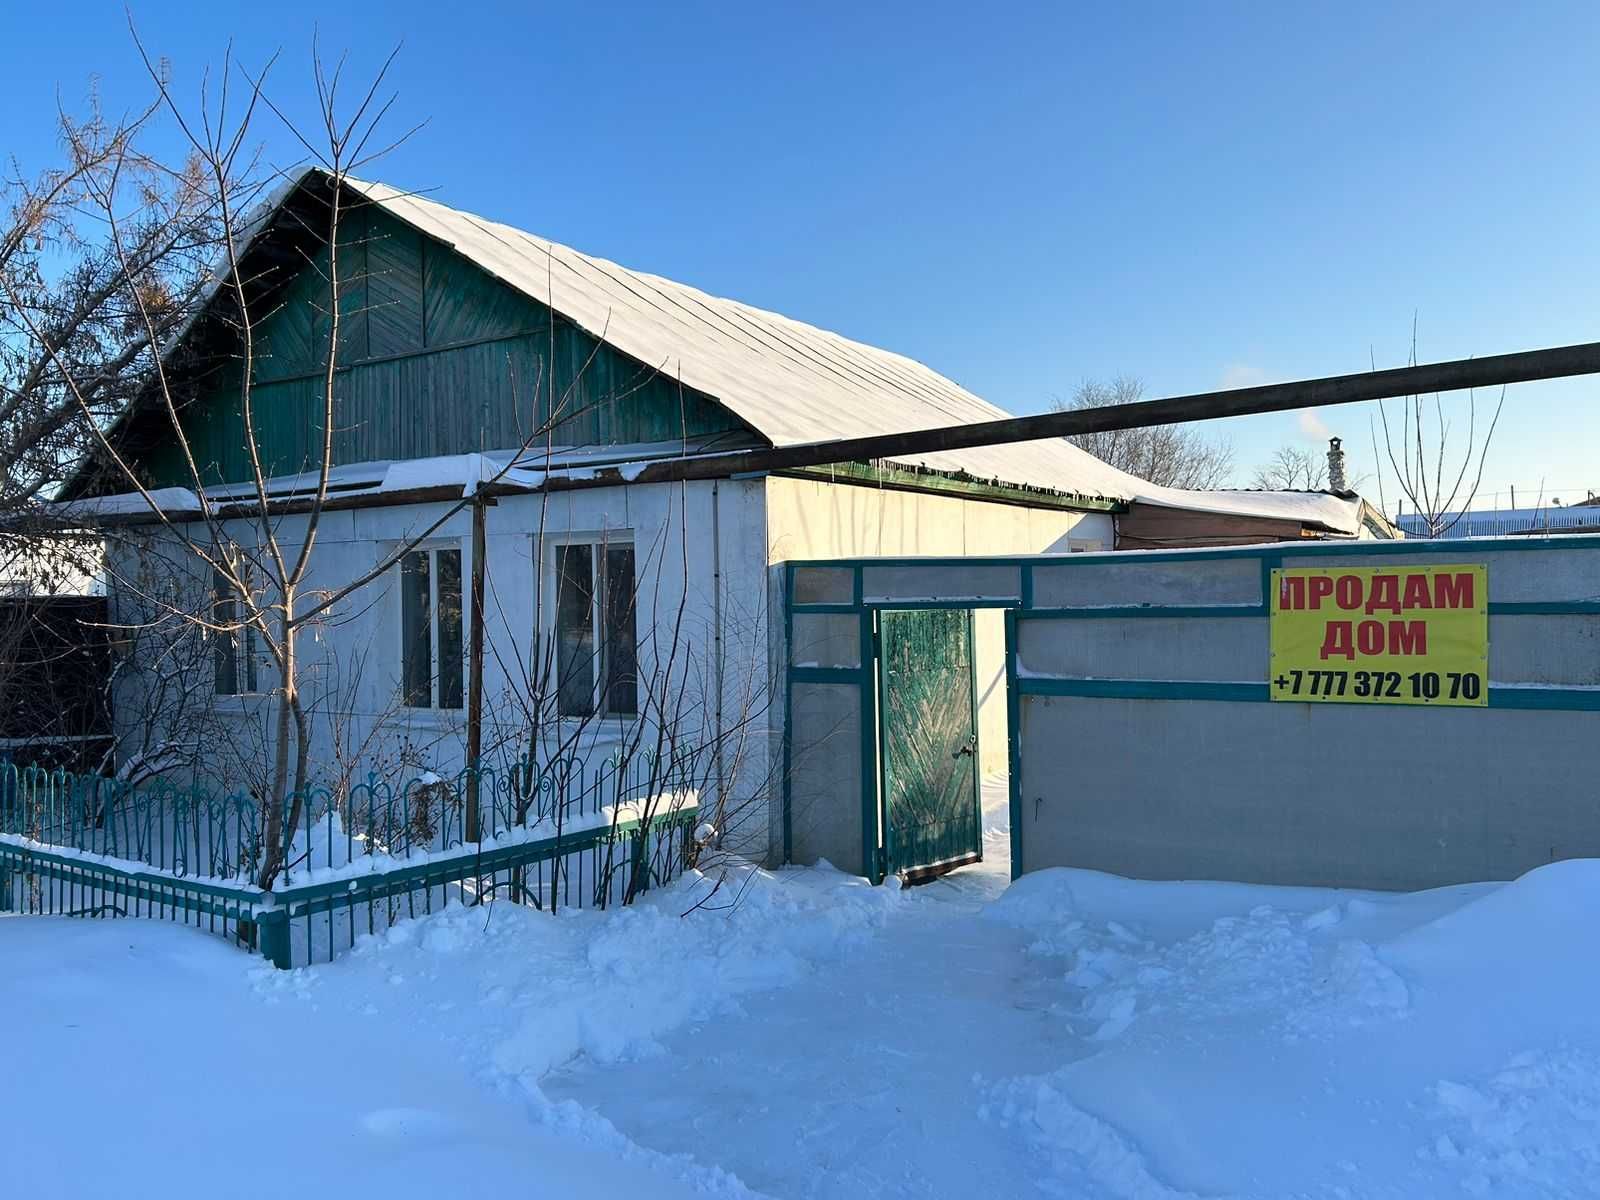 Продам дом в г. Тобыл (Затобольск)